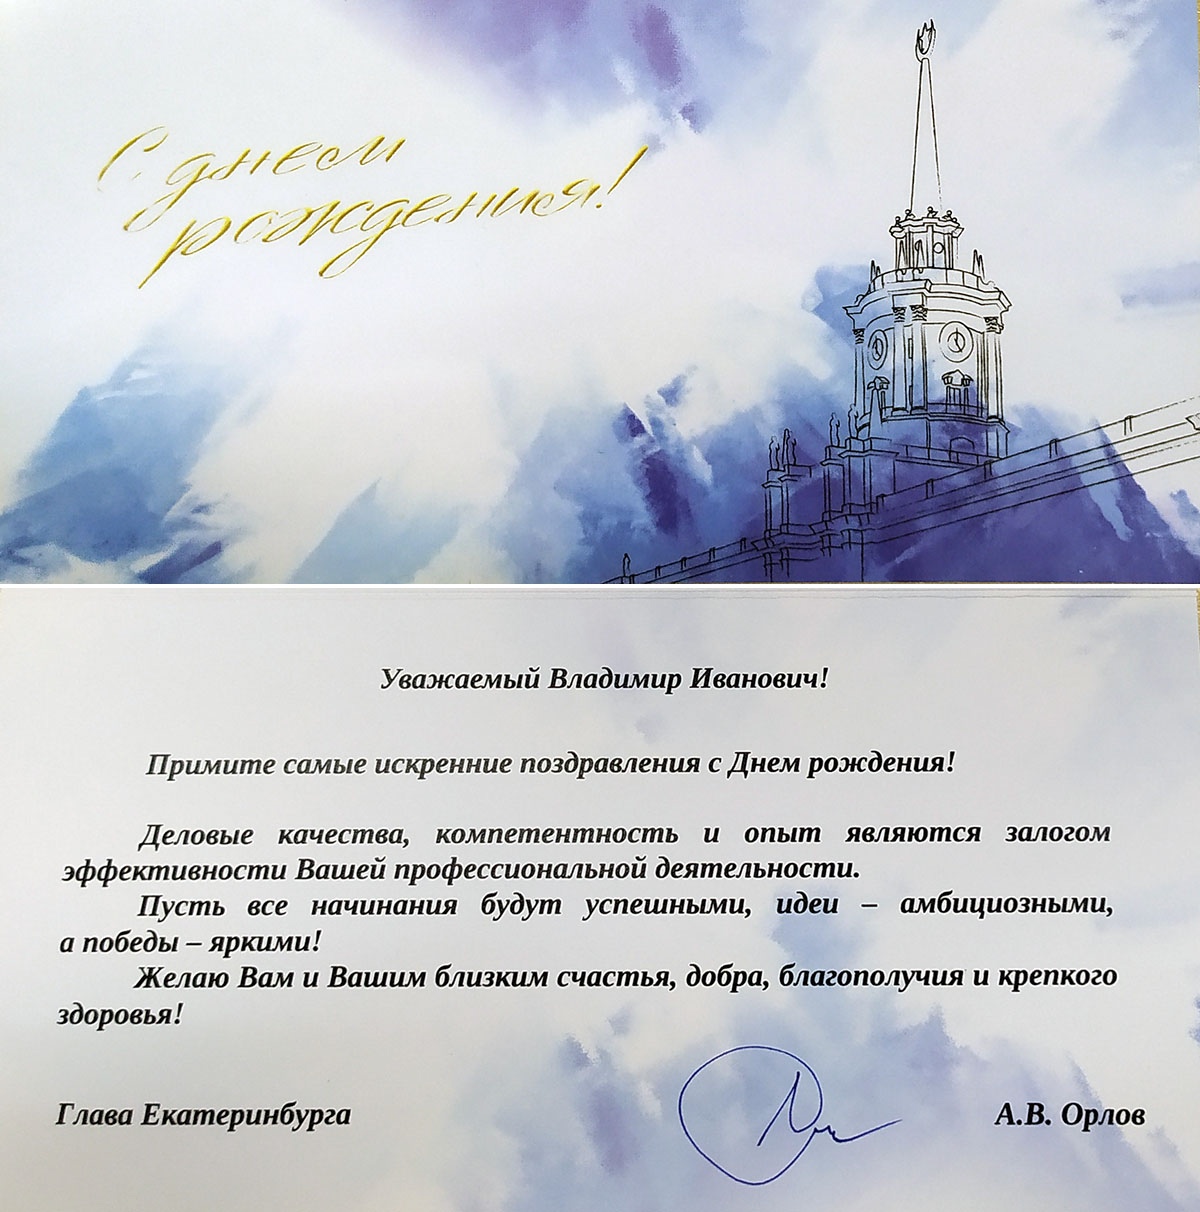 Поздравлении с днем рождения атамана В.И. Романова